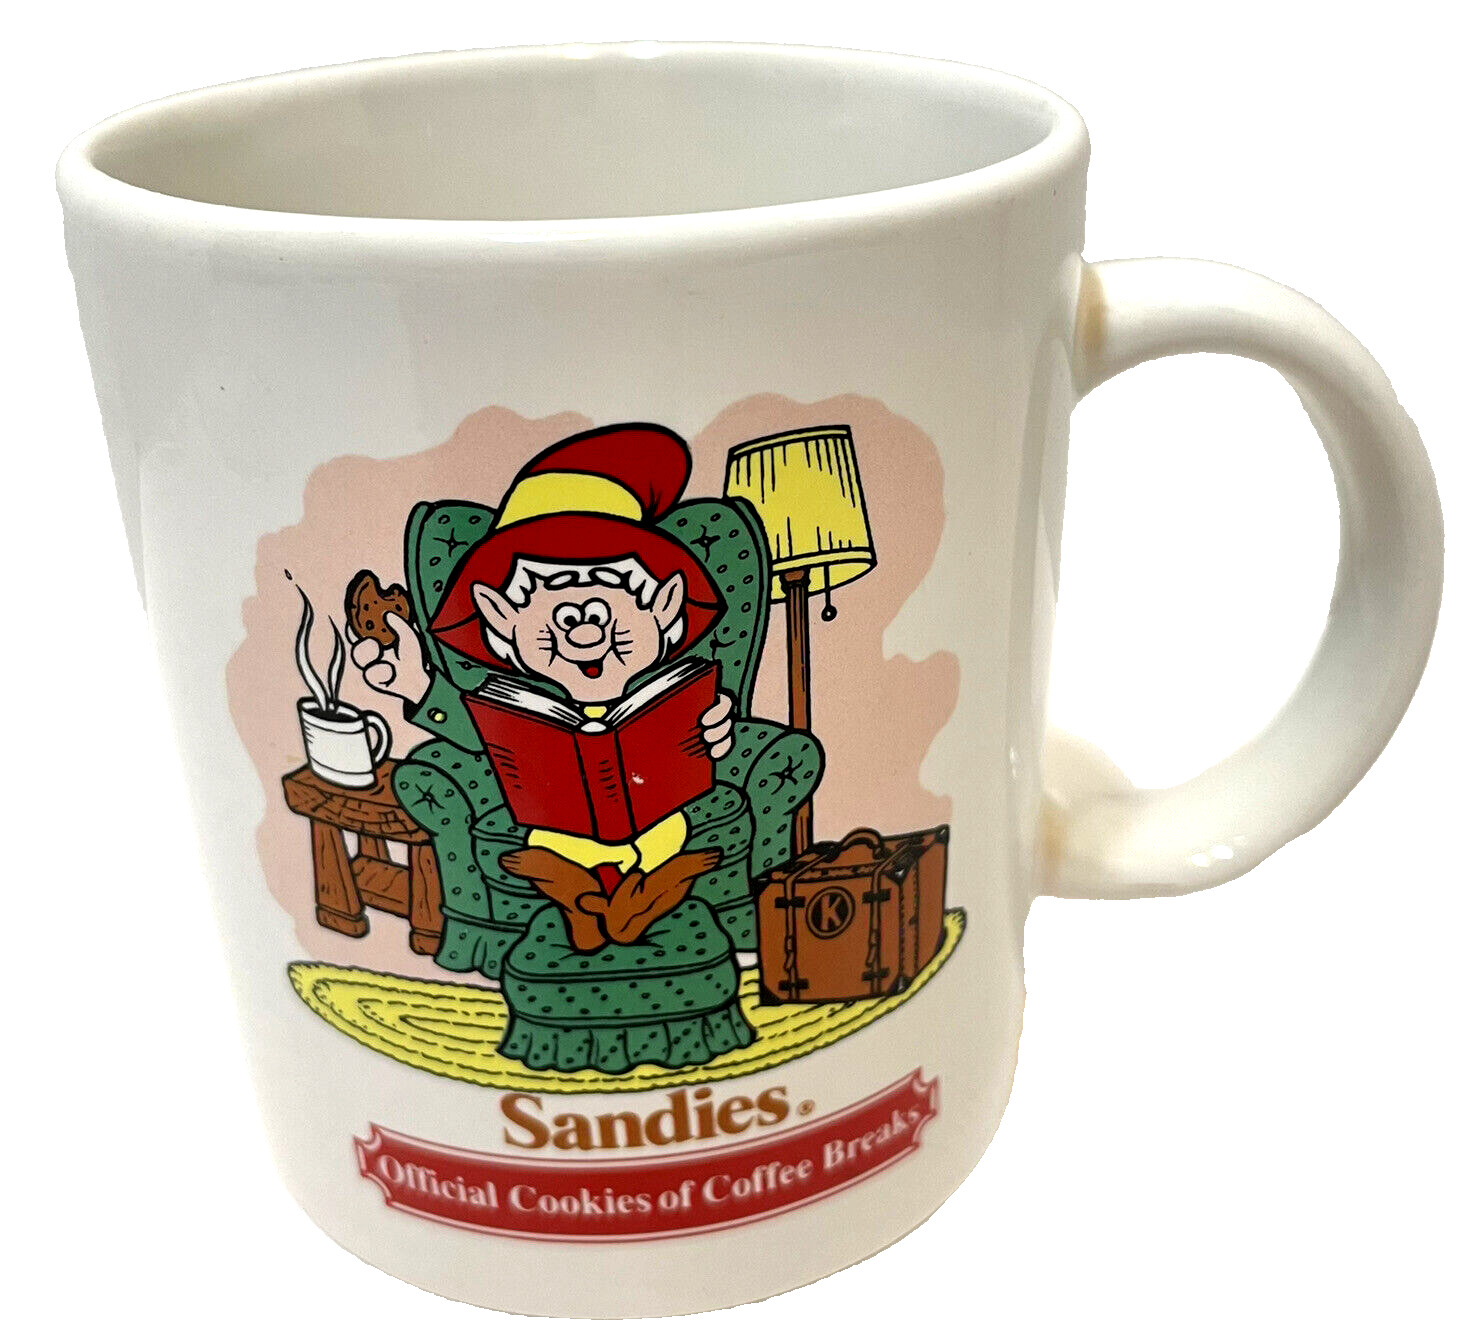 Vintage 1980s Keebler Sandies Official Cookies of Coffee Breaks Cup Mug